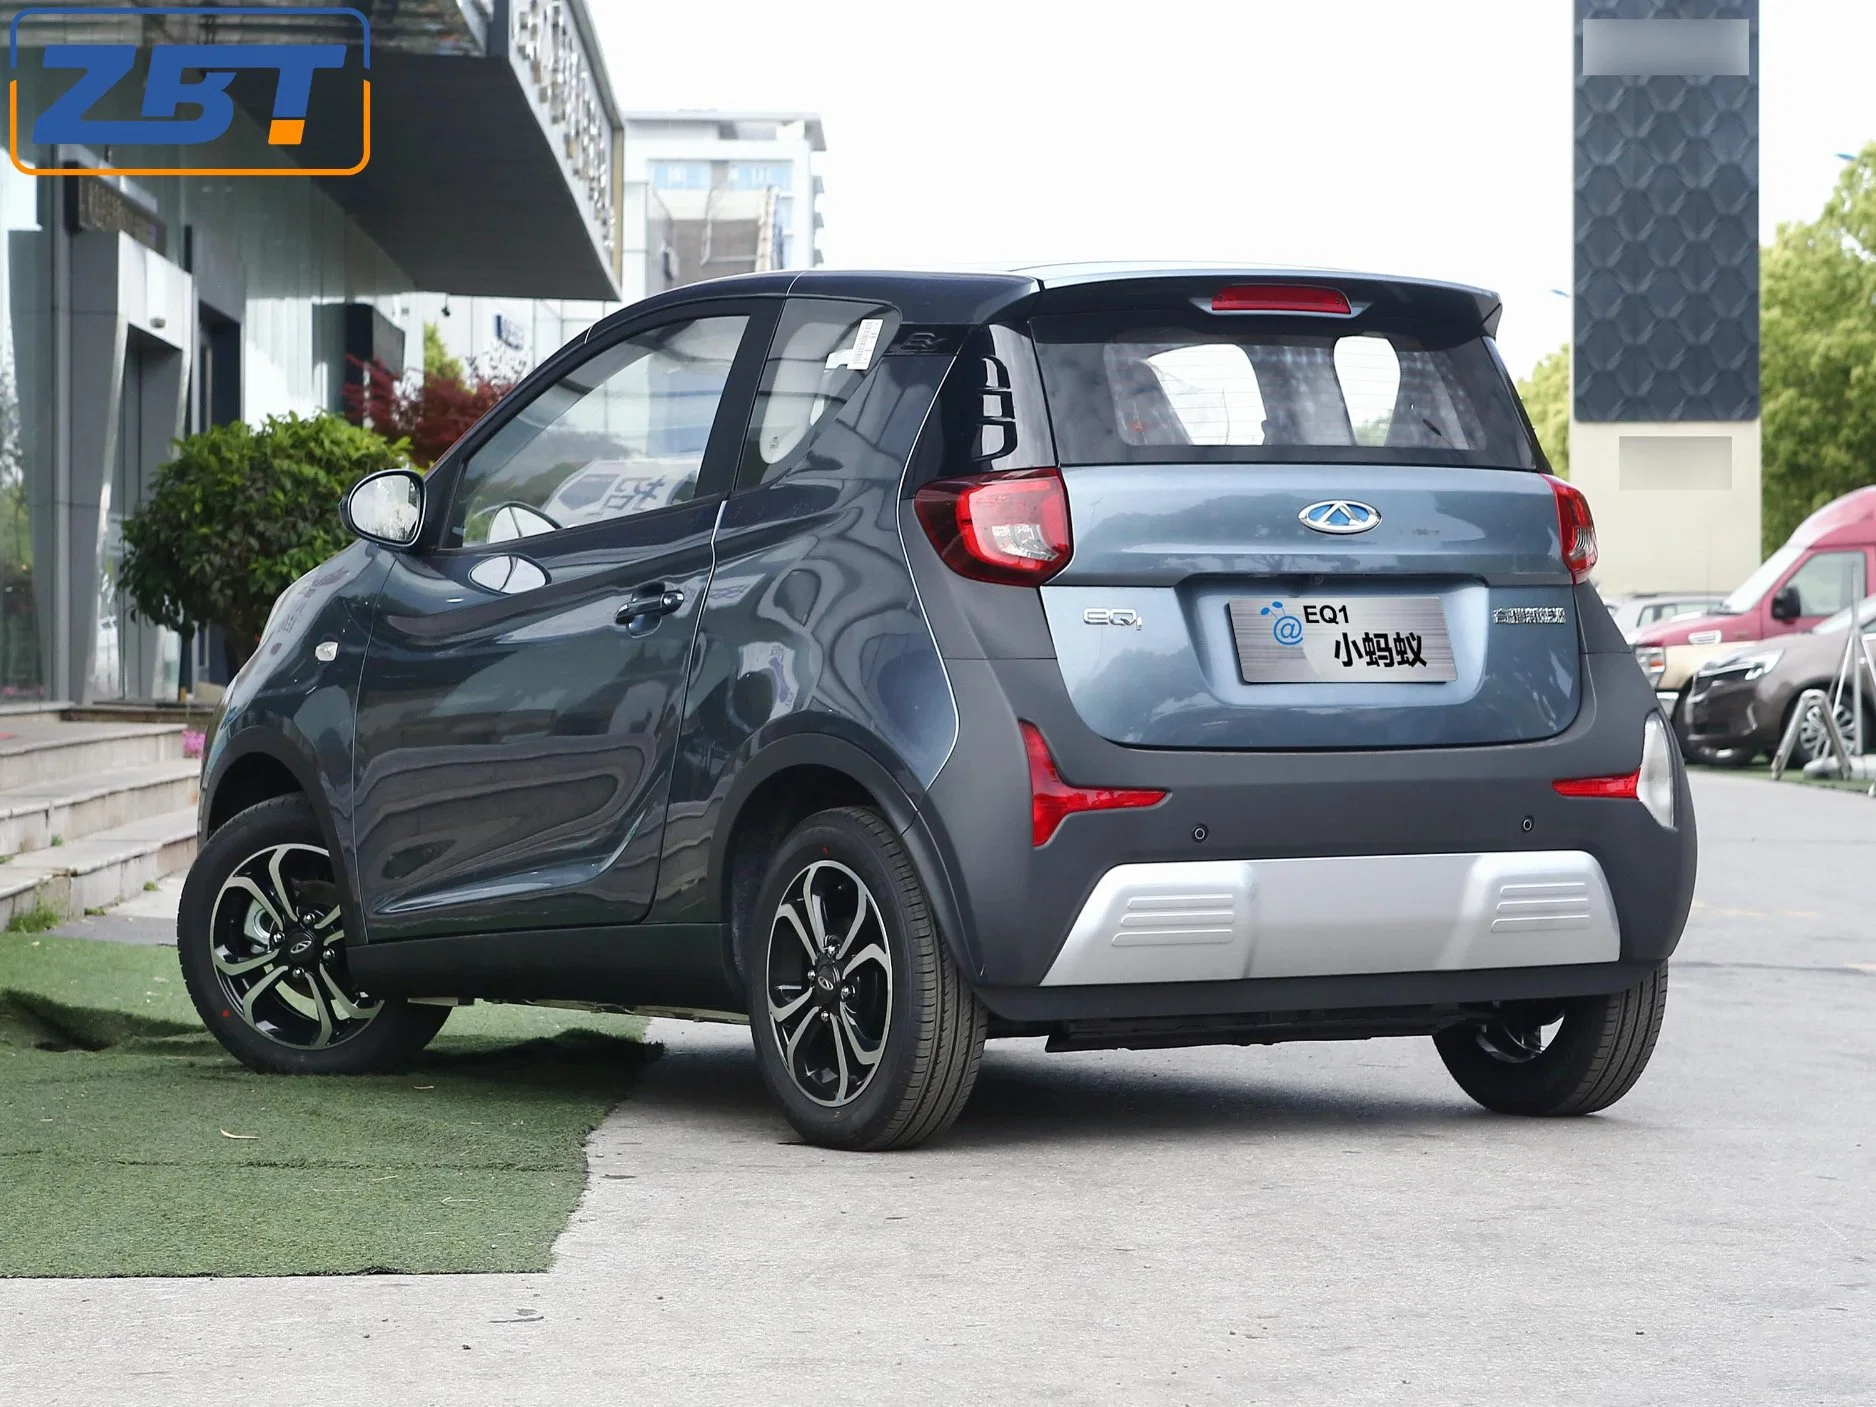 السيارة الكهربائية الجديدة للسيارة CHery EQ1 على بعد 150 كم سرعة فائقة سيارة رياضية صغيرة بمحرك سيارة جديدة تعمل بالطاقة لسيارة خاصة للبالغين